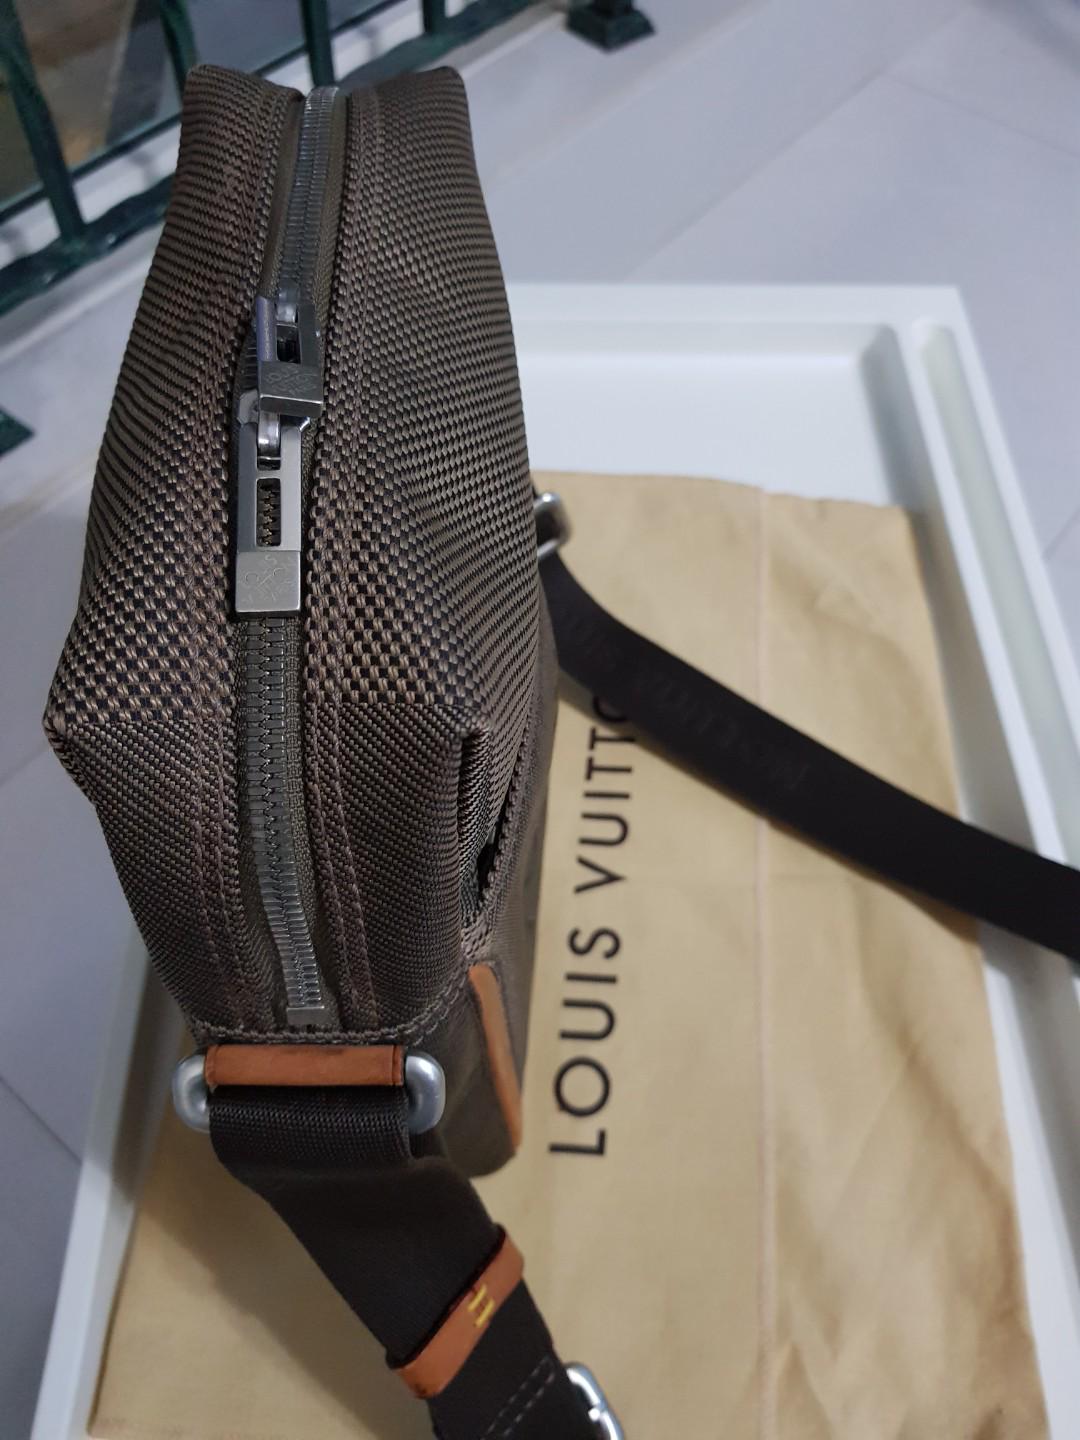 Louis Vuitton, Bags, Louis Vuitton Black Denier Geant Canvas Messenger